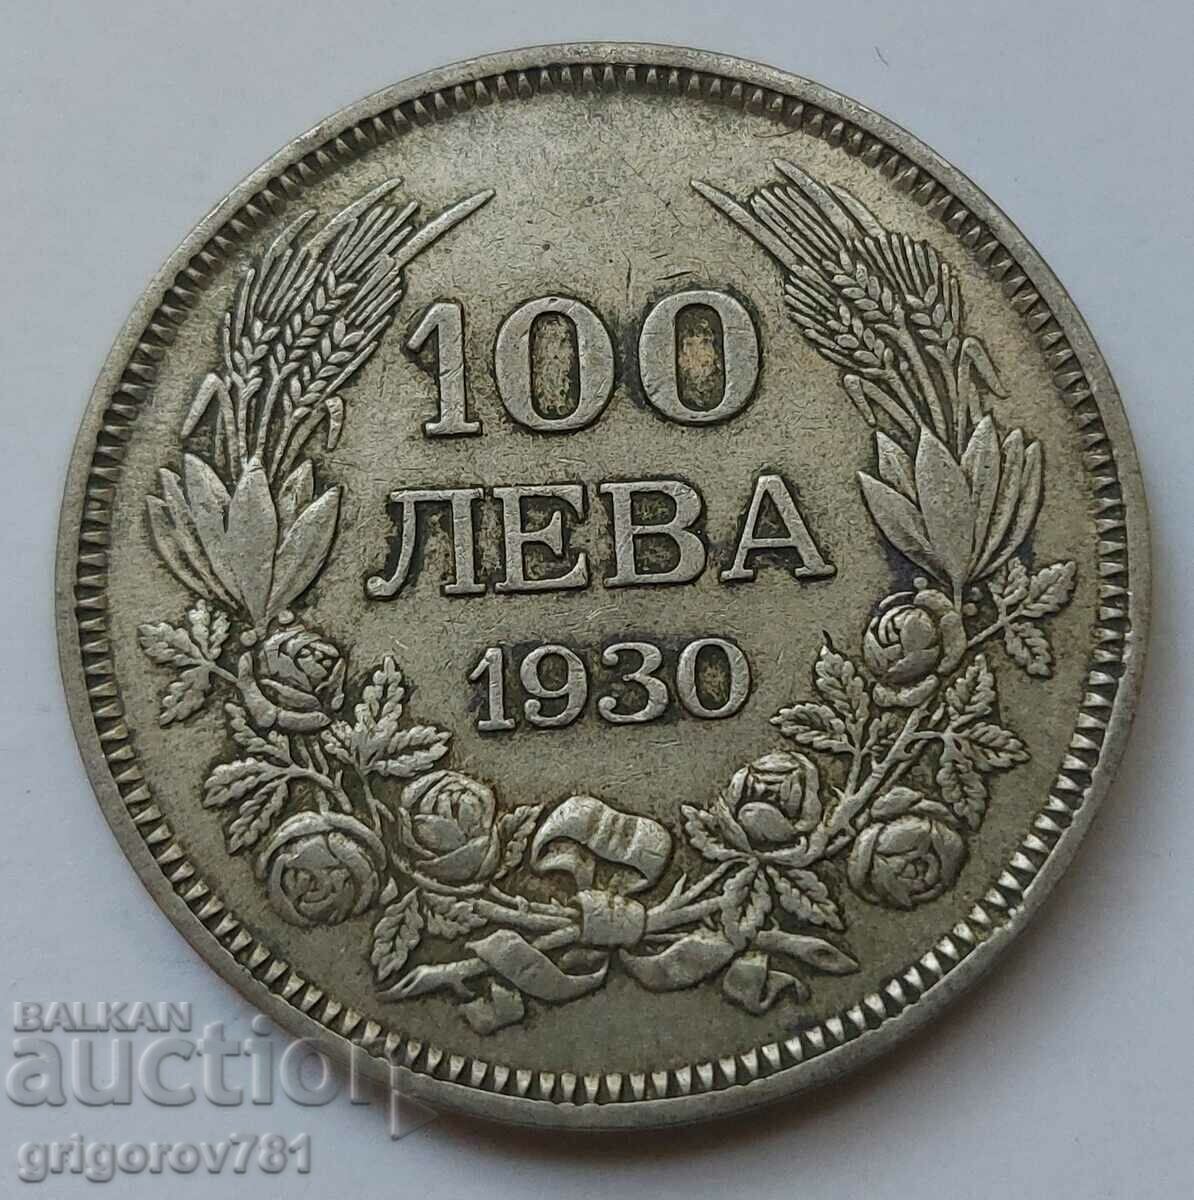 Ασήμι 100 λέβα Βουλγαρία 1930 - ασημένιο νόμισμα #2